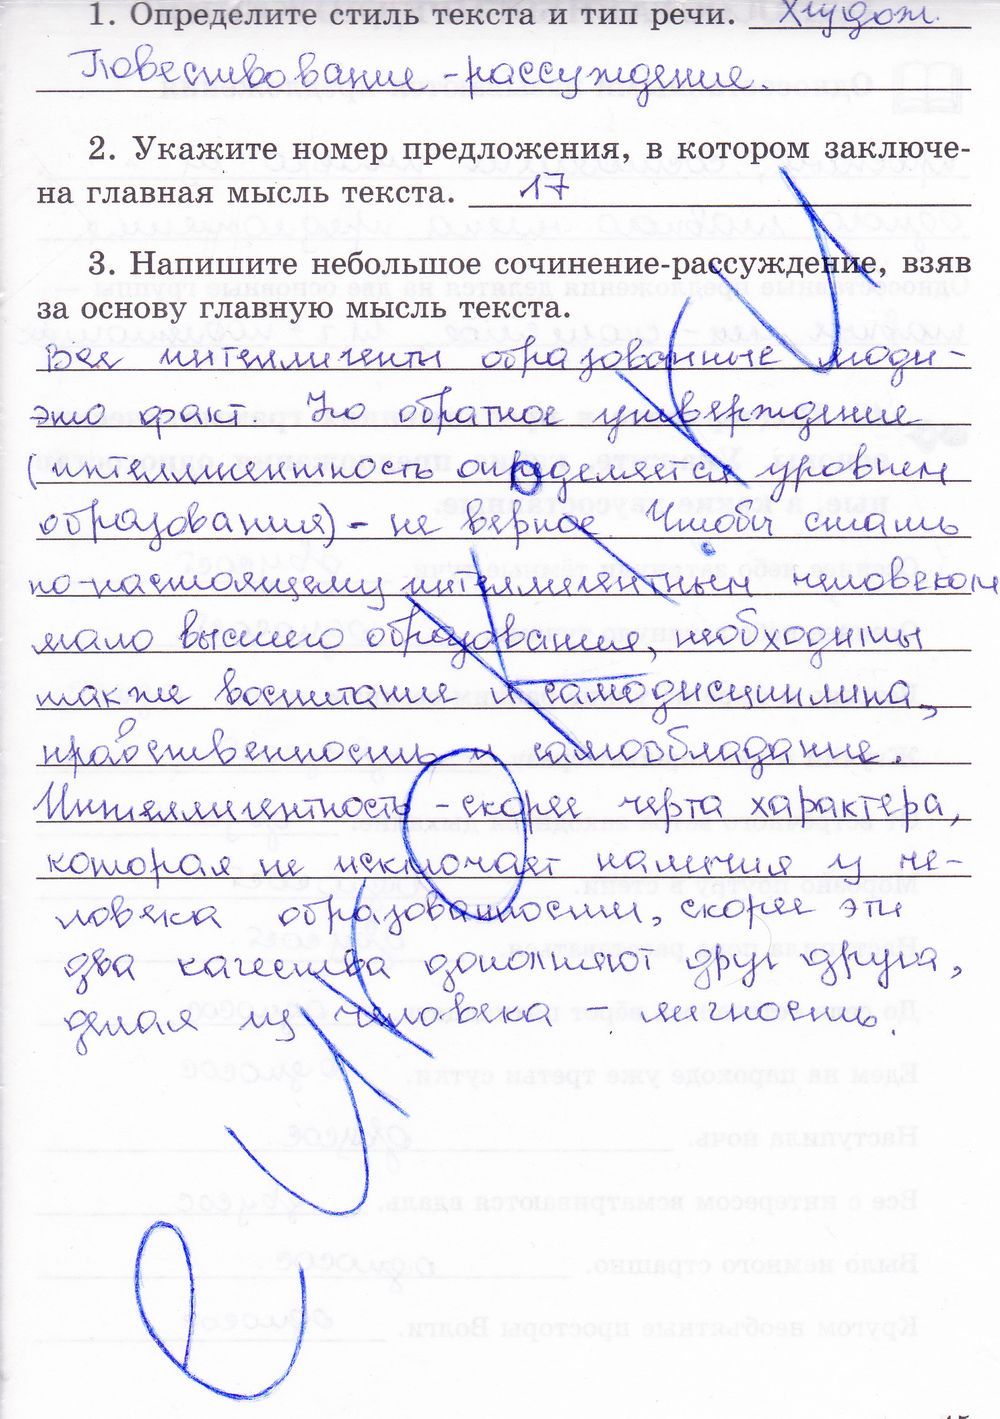 ГДЗ Русский язык 8 класс - стр. 45